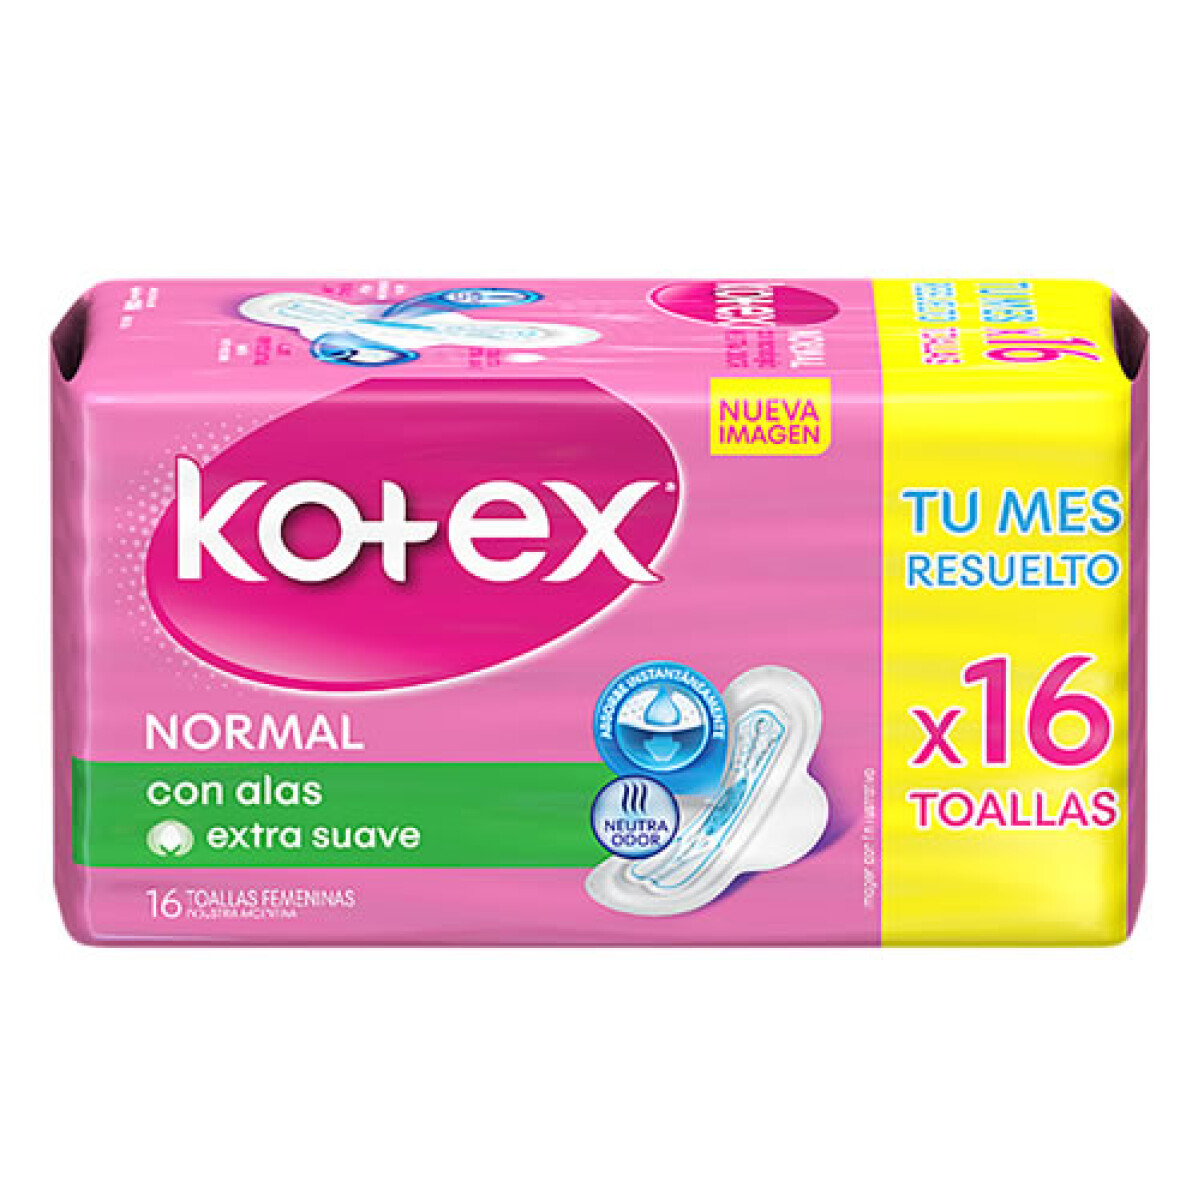 KOTEX NORMAL CON ALAS X16 